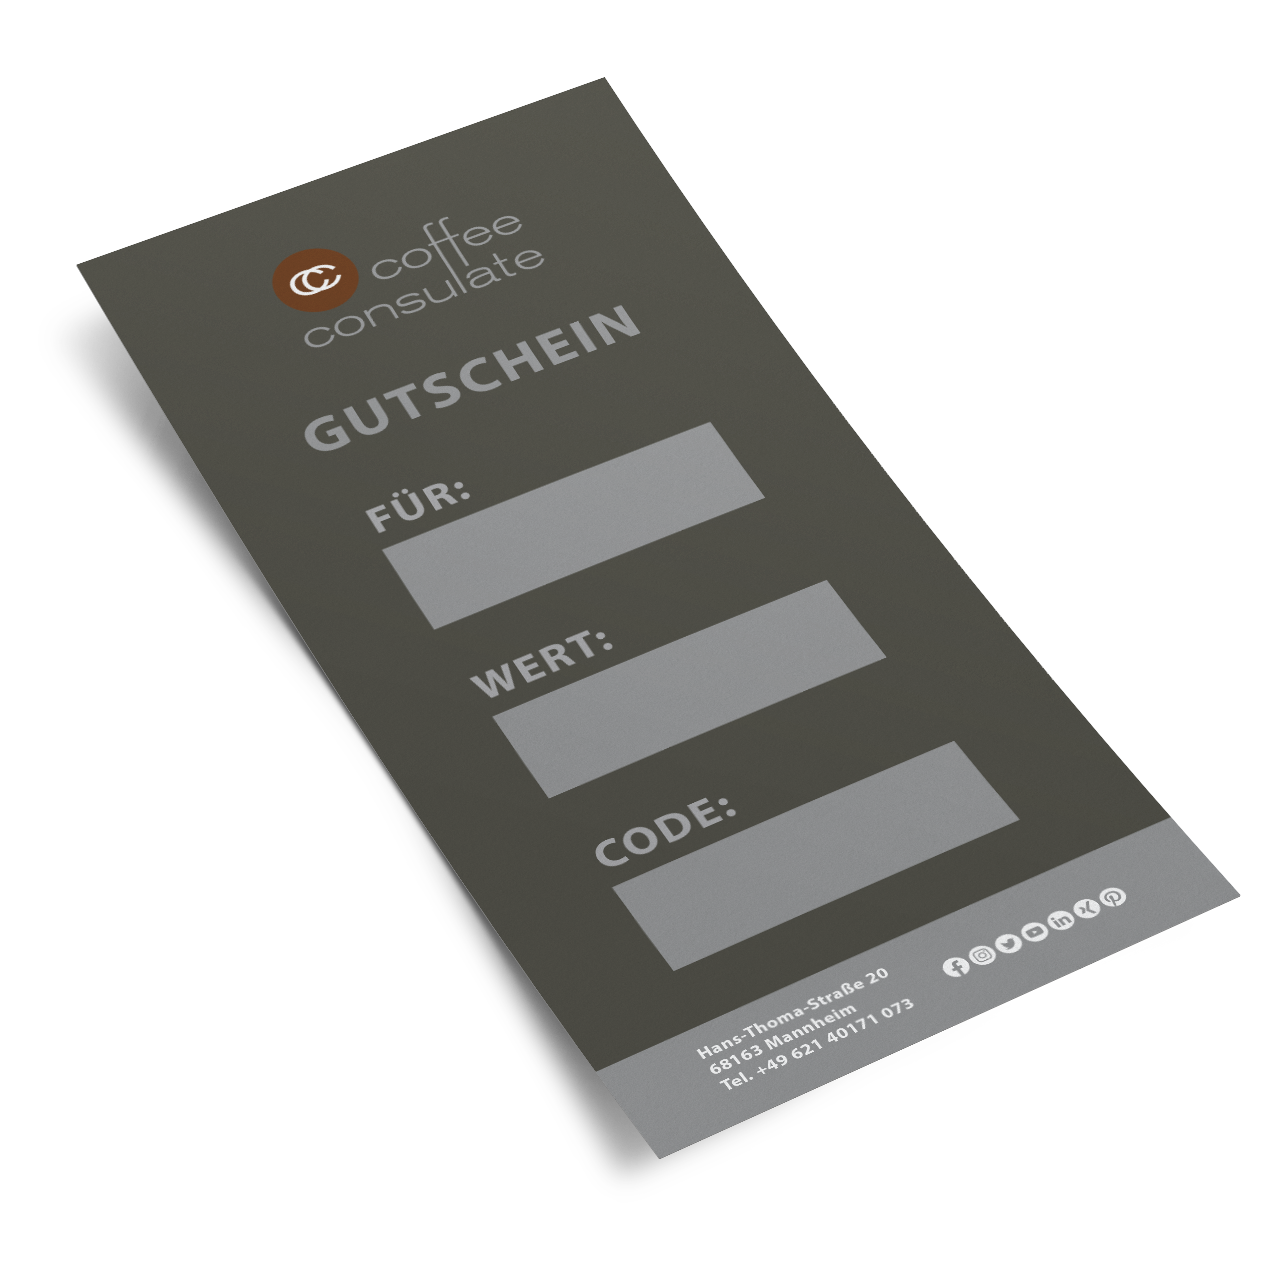 Coffee Consulate Gutschein